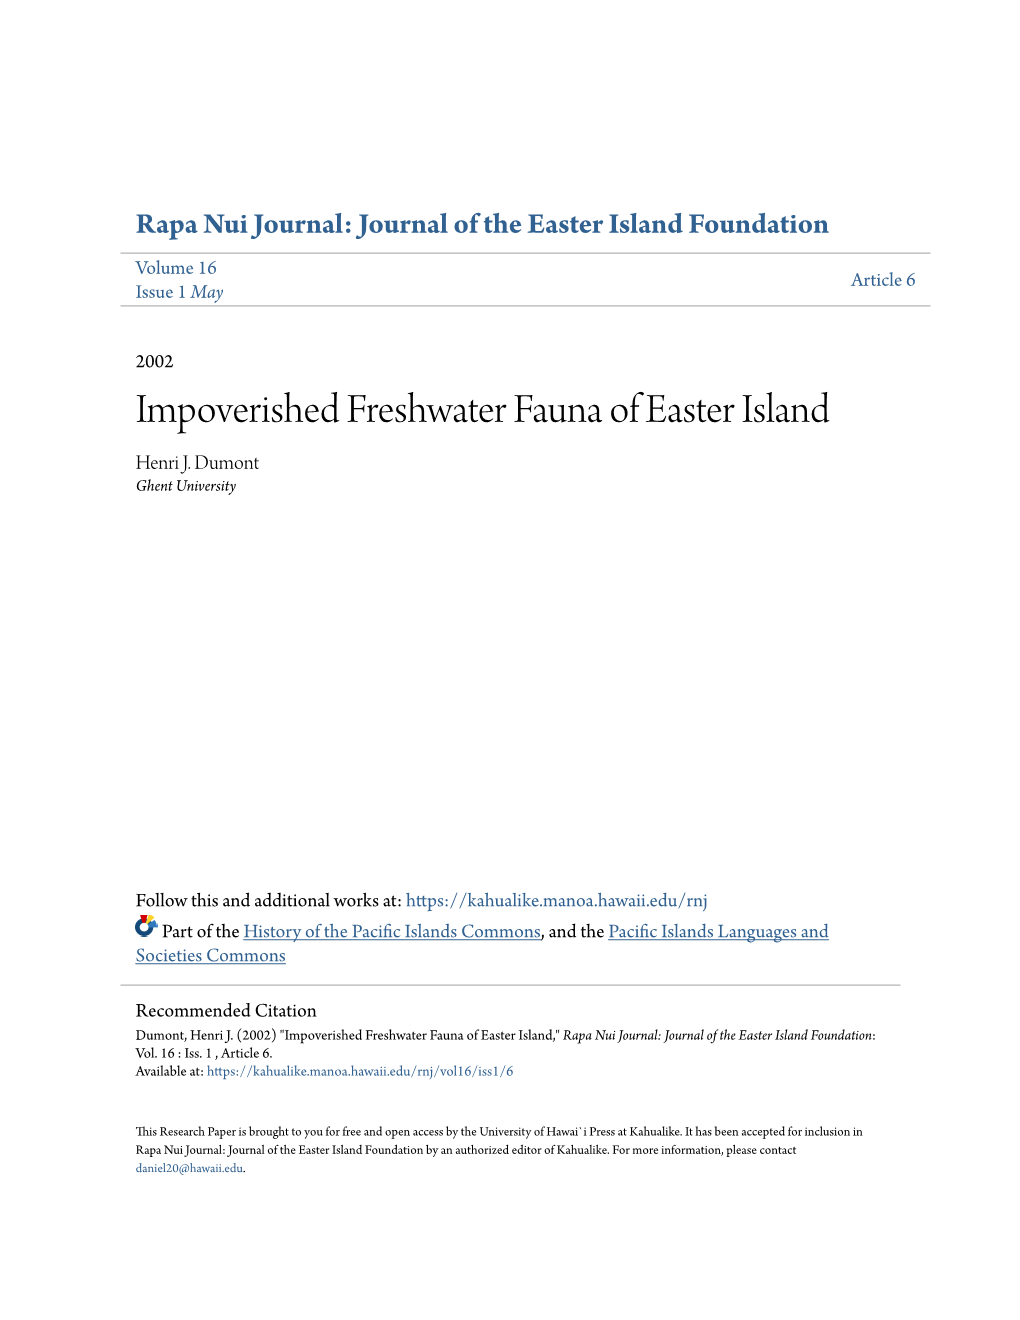 Impoverished Freshwater Fauna of Easter Island Henri J